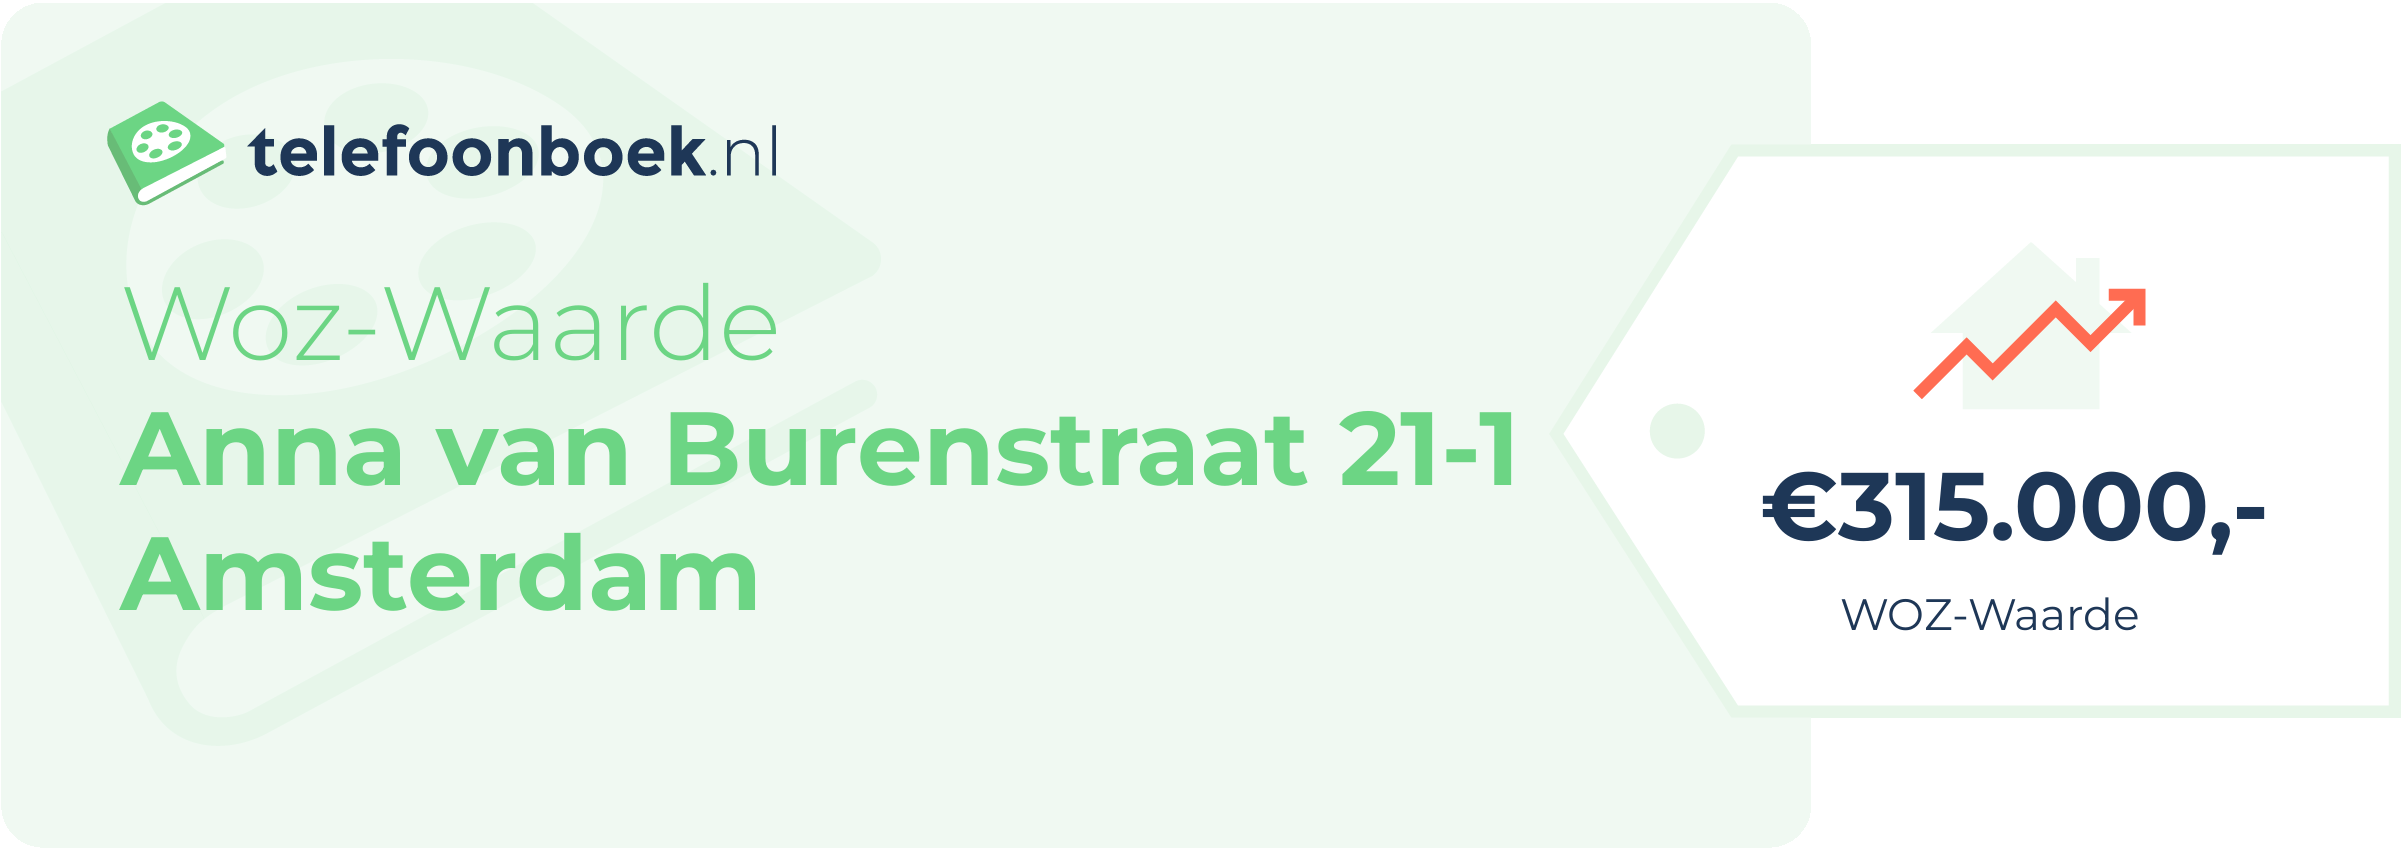 WOZ-waarde Anna Van Burenstraat 21-1 Amsterdam